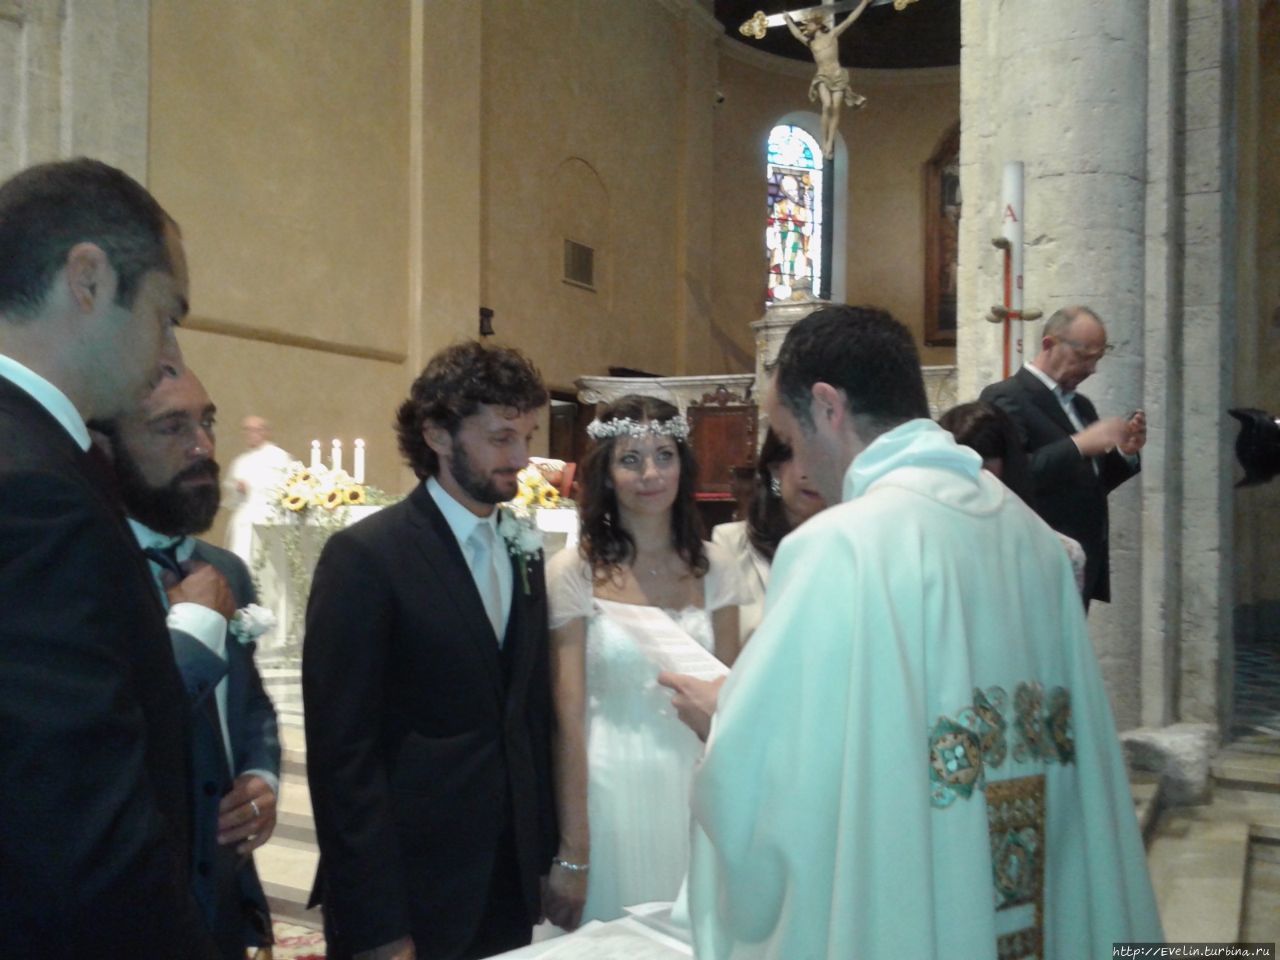 Итальянская свадьба - вход свободный